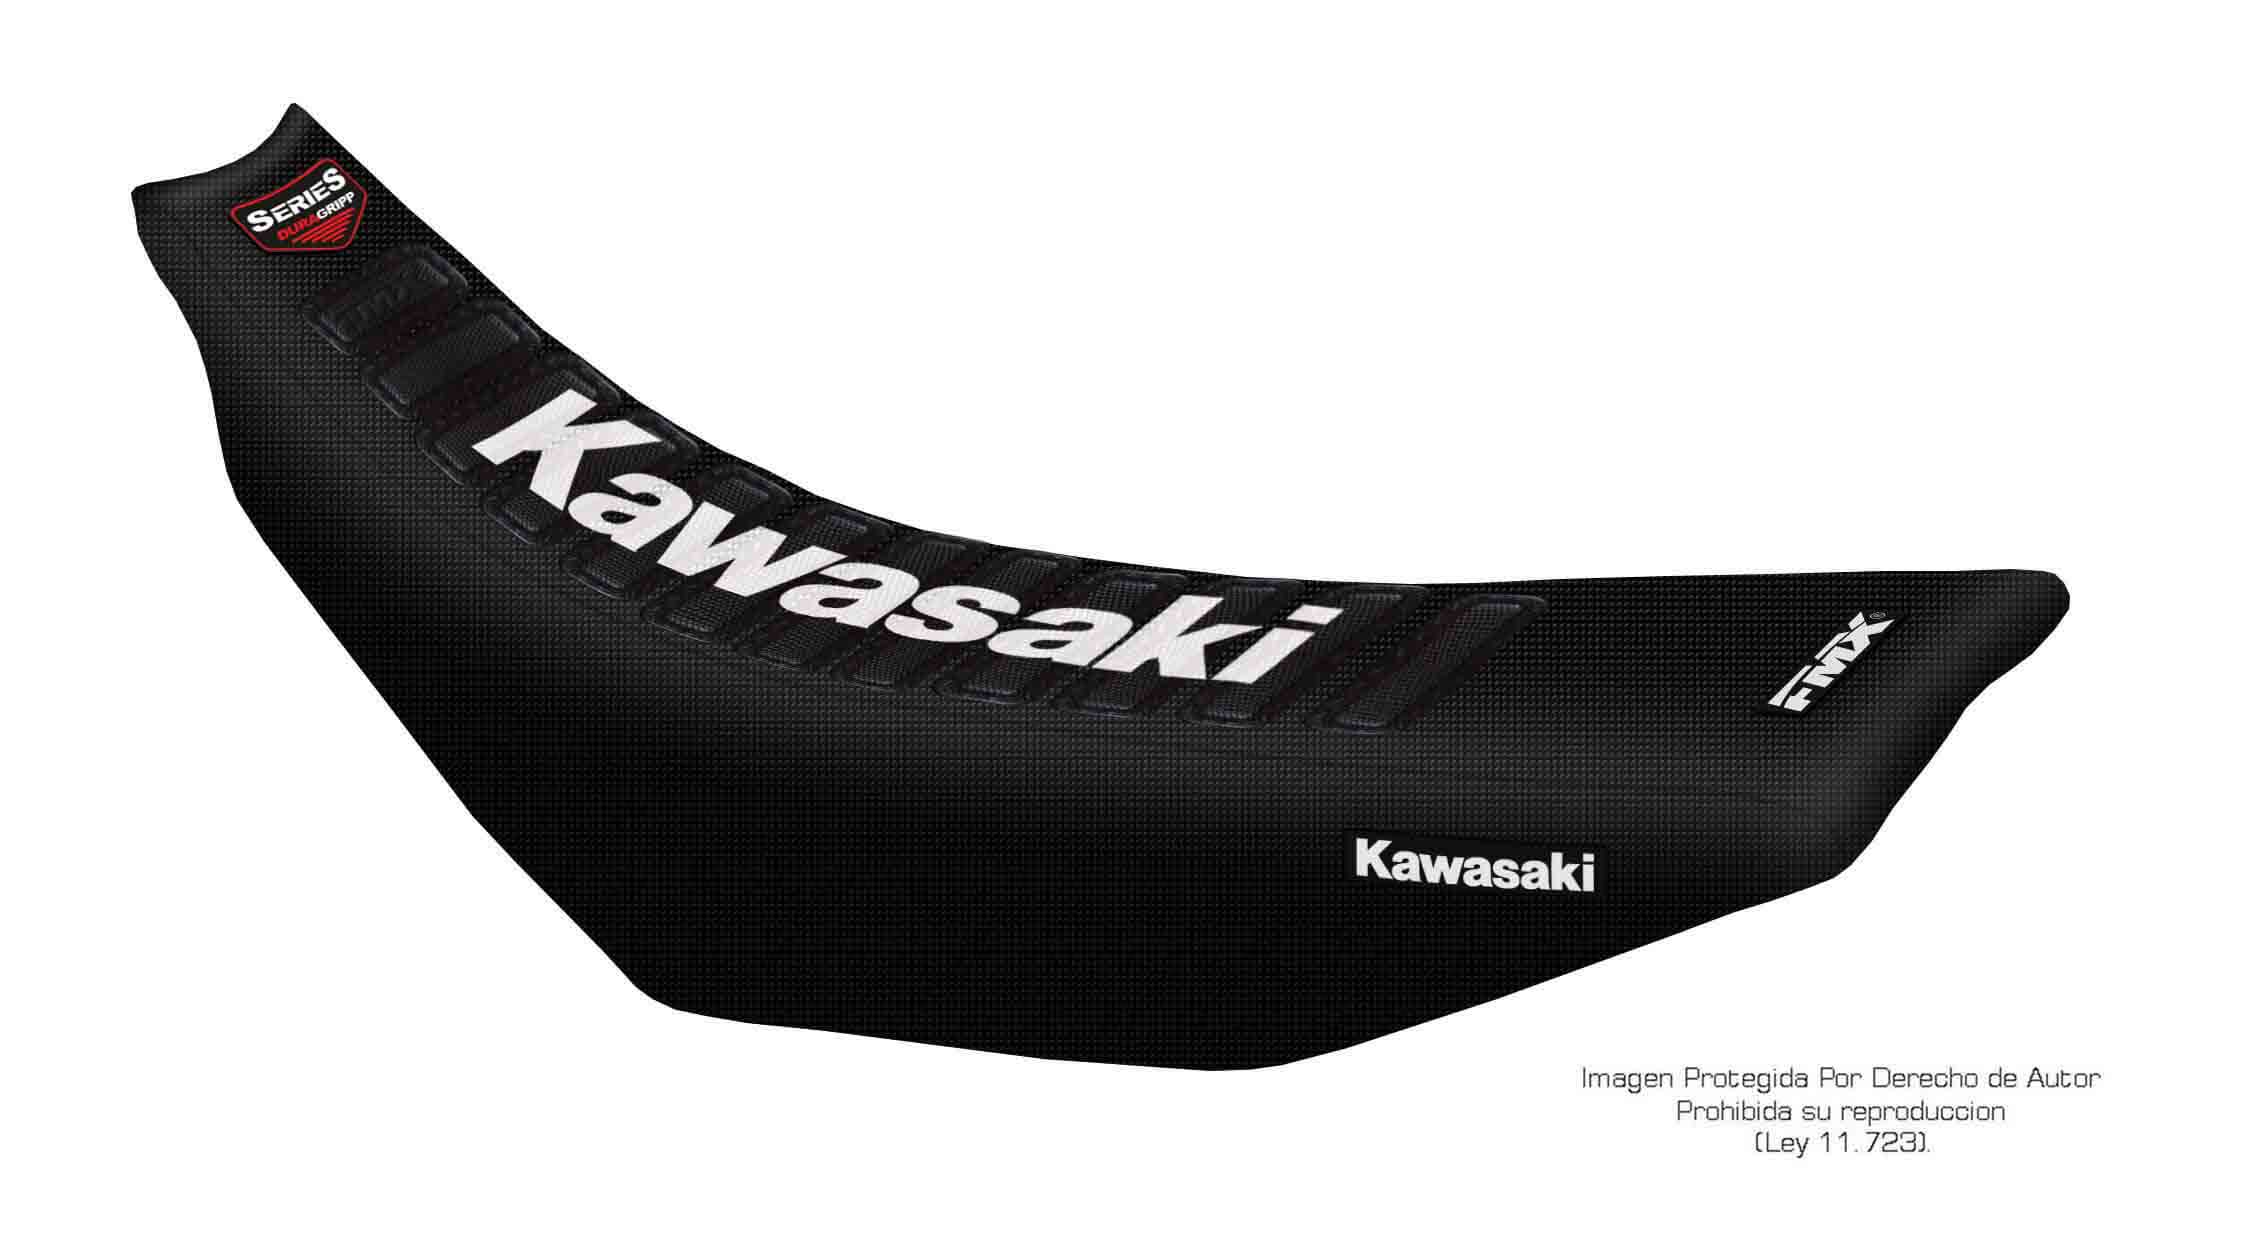 Funda Asiento Kawasaki Kx 125/250 - 92/96 Series. Es una obra de arte artesanal fabricada en Argentina, nuestros productos son de la mejor calidad.